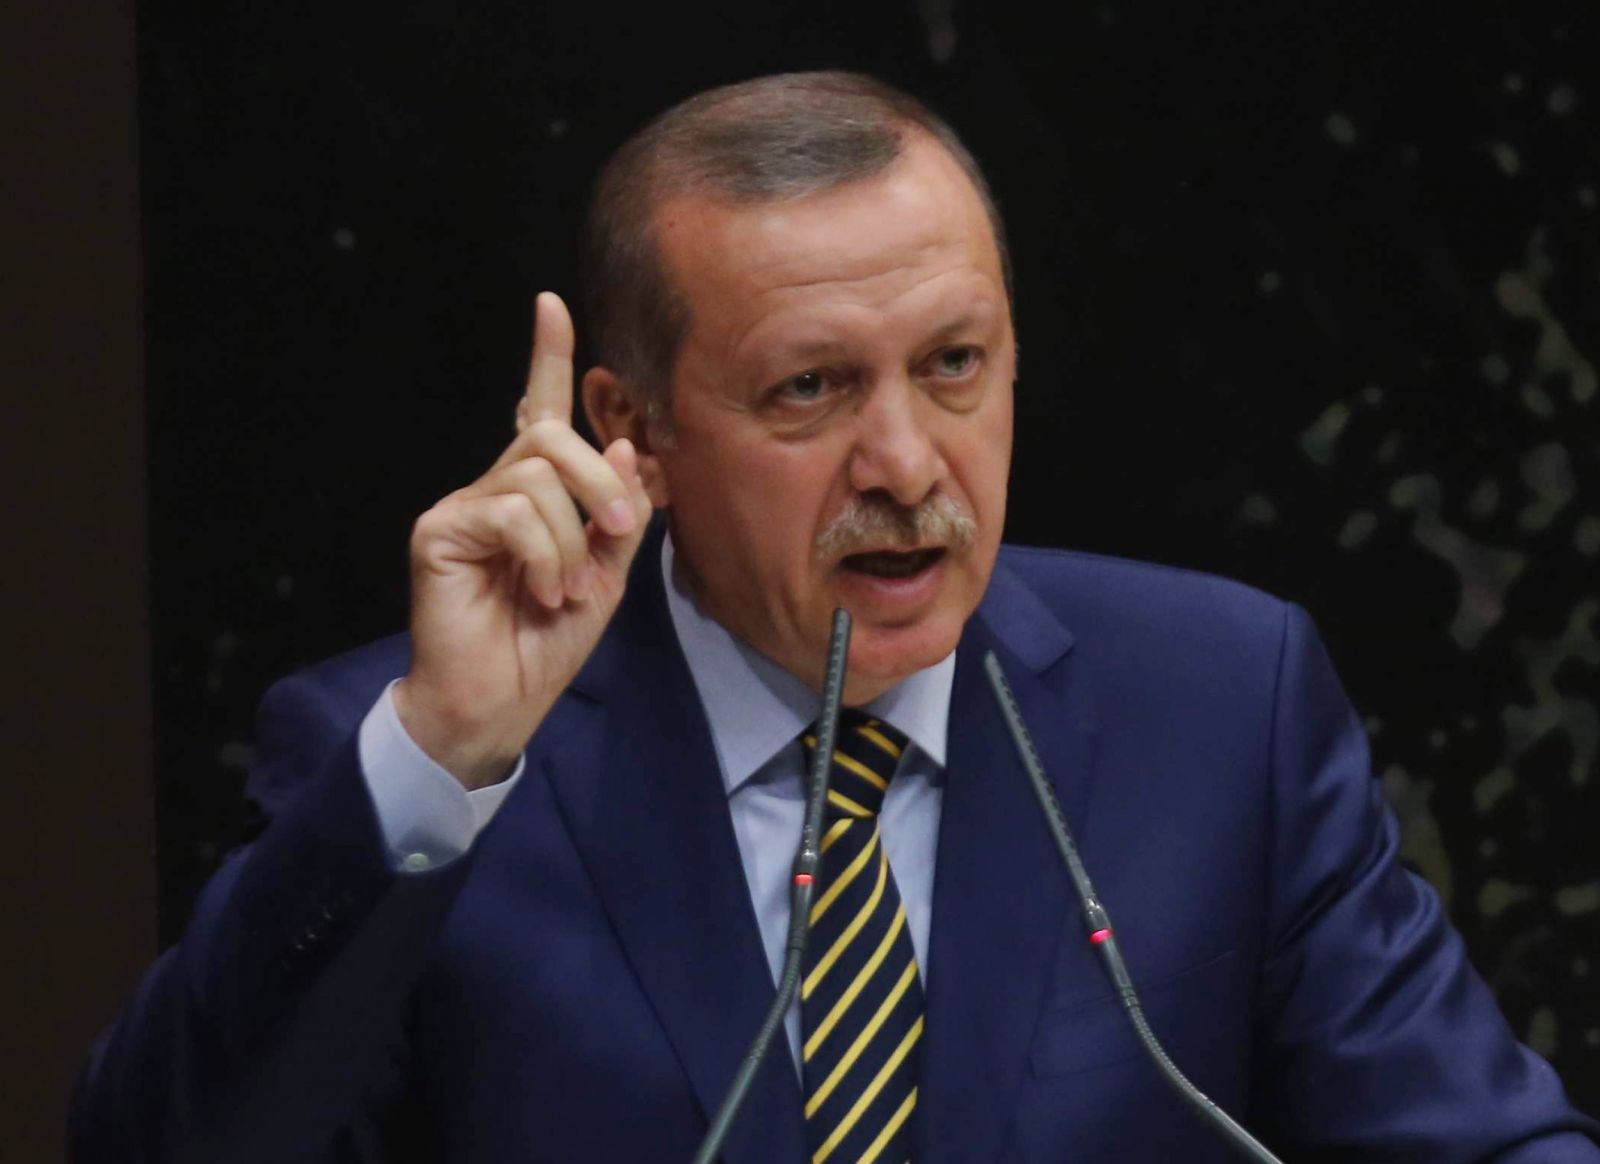   أردوغان: تركيا قد تعيد النظر في علاقاتها مع أوروبا بعد استفتاء أبريل المقبل